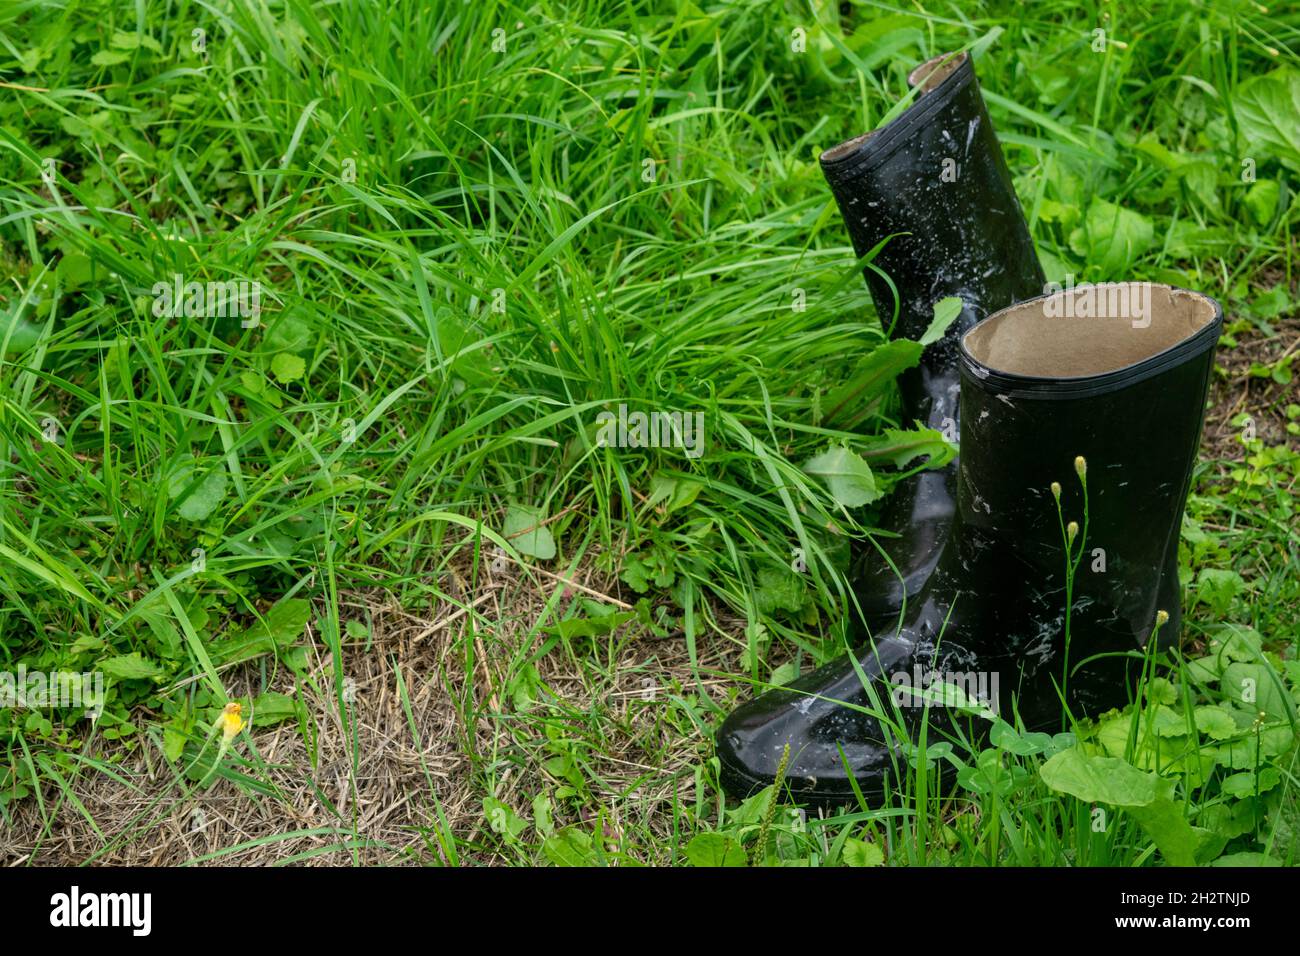 Une paire de bottes en caoutchouc noir dans le gras vert Banque D'Images